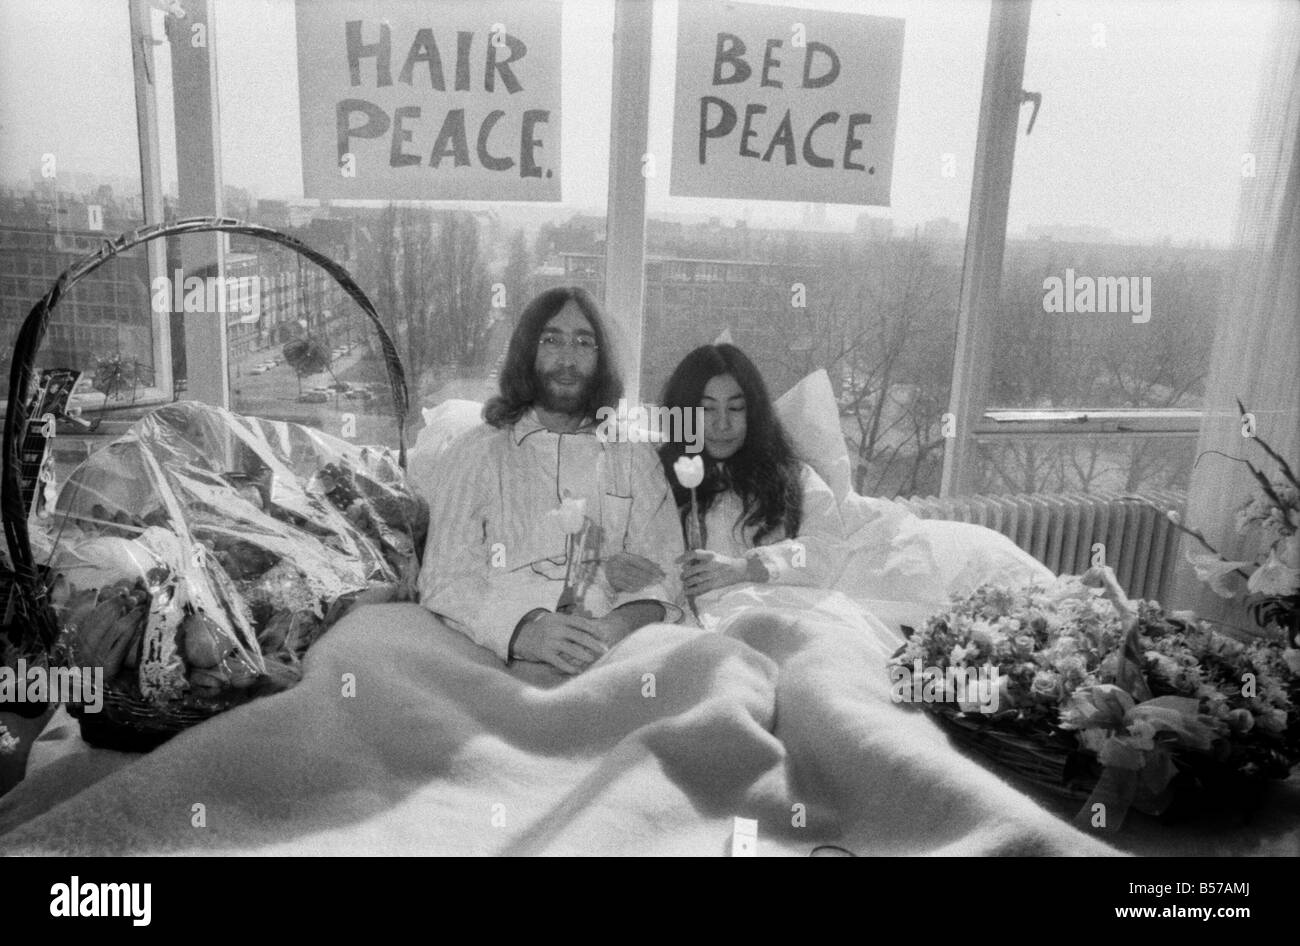 John Lennon und seine Frau Yoko Ono haben ein Wochen-liebe ihre Zimmer im Hilton Hotel, Amsterdam. Sie bleiben im Bett für sieben Tage - mit Früchten, Blumen und Peace-Zeichen. März 1969 Z02902-017 Stockfoto